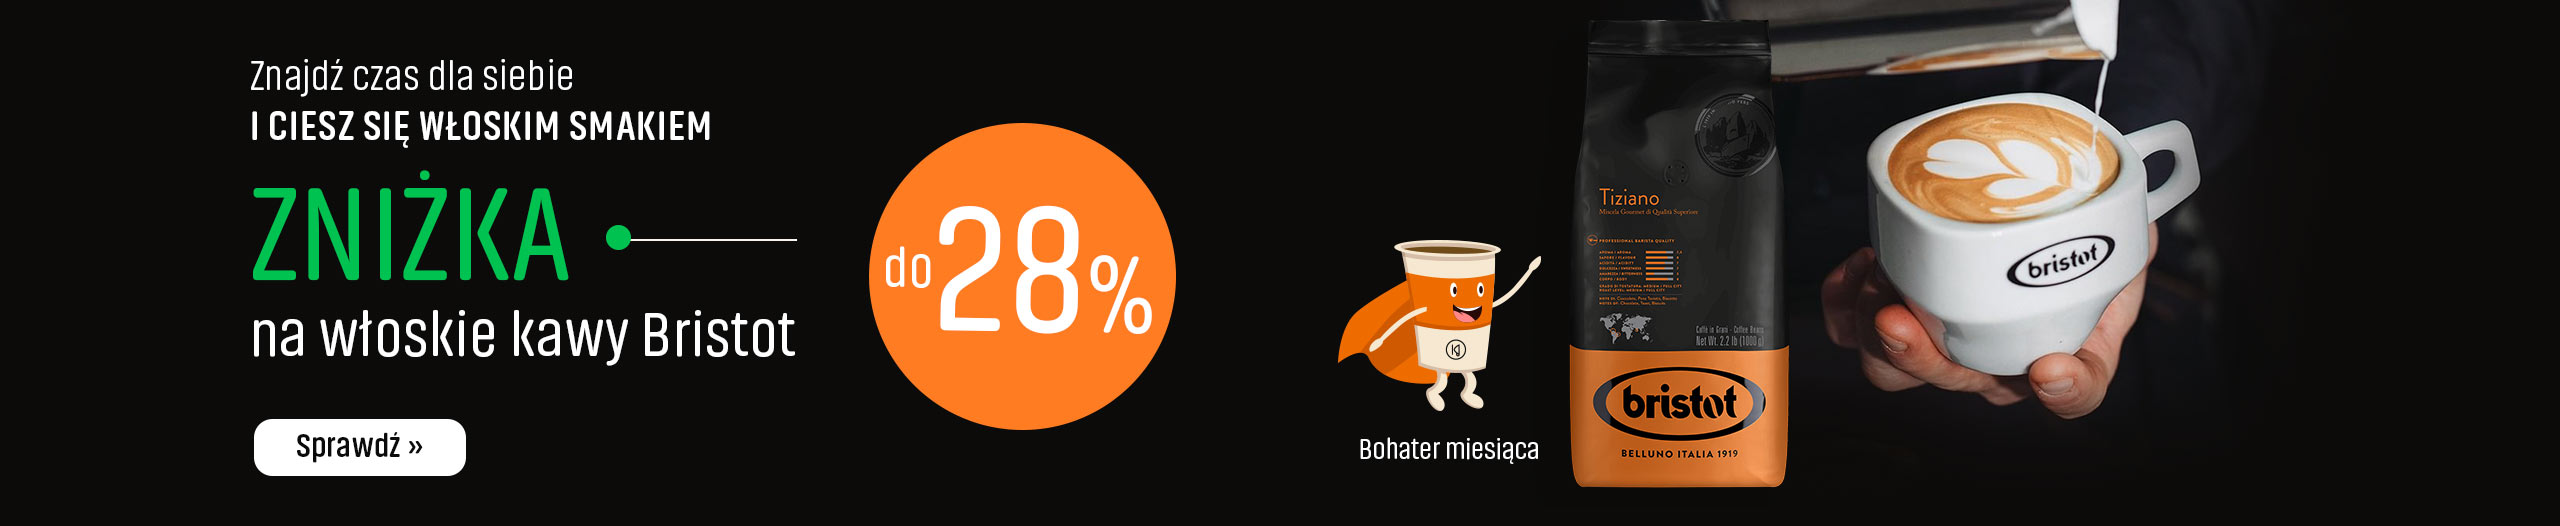 Zniżka na włoskie kawy Bristot do 28%